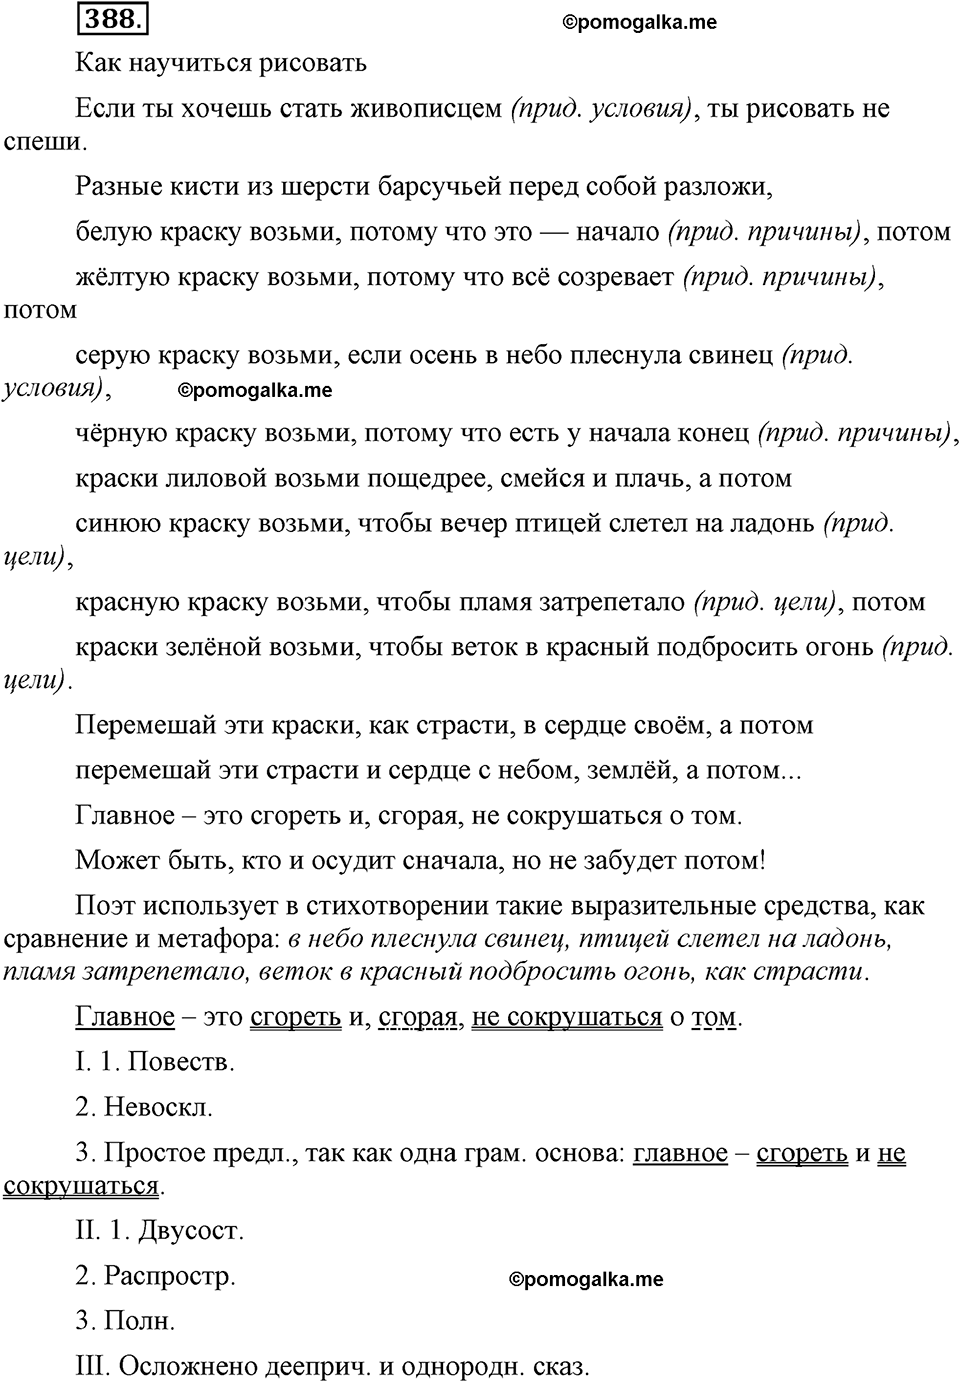 страница 174 номер 388 русский язык 9 класс Бархударов 2011 год